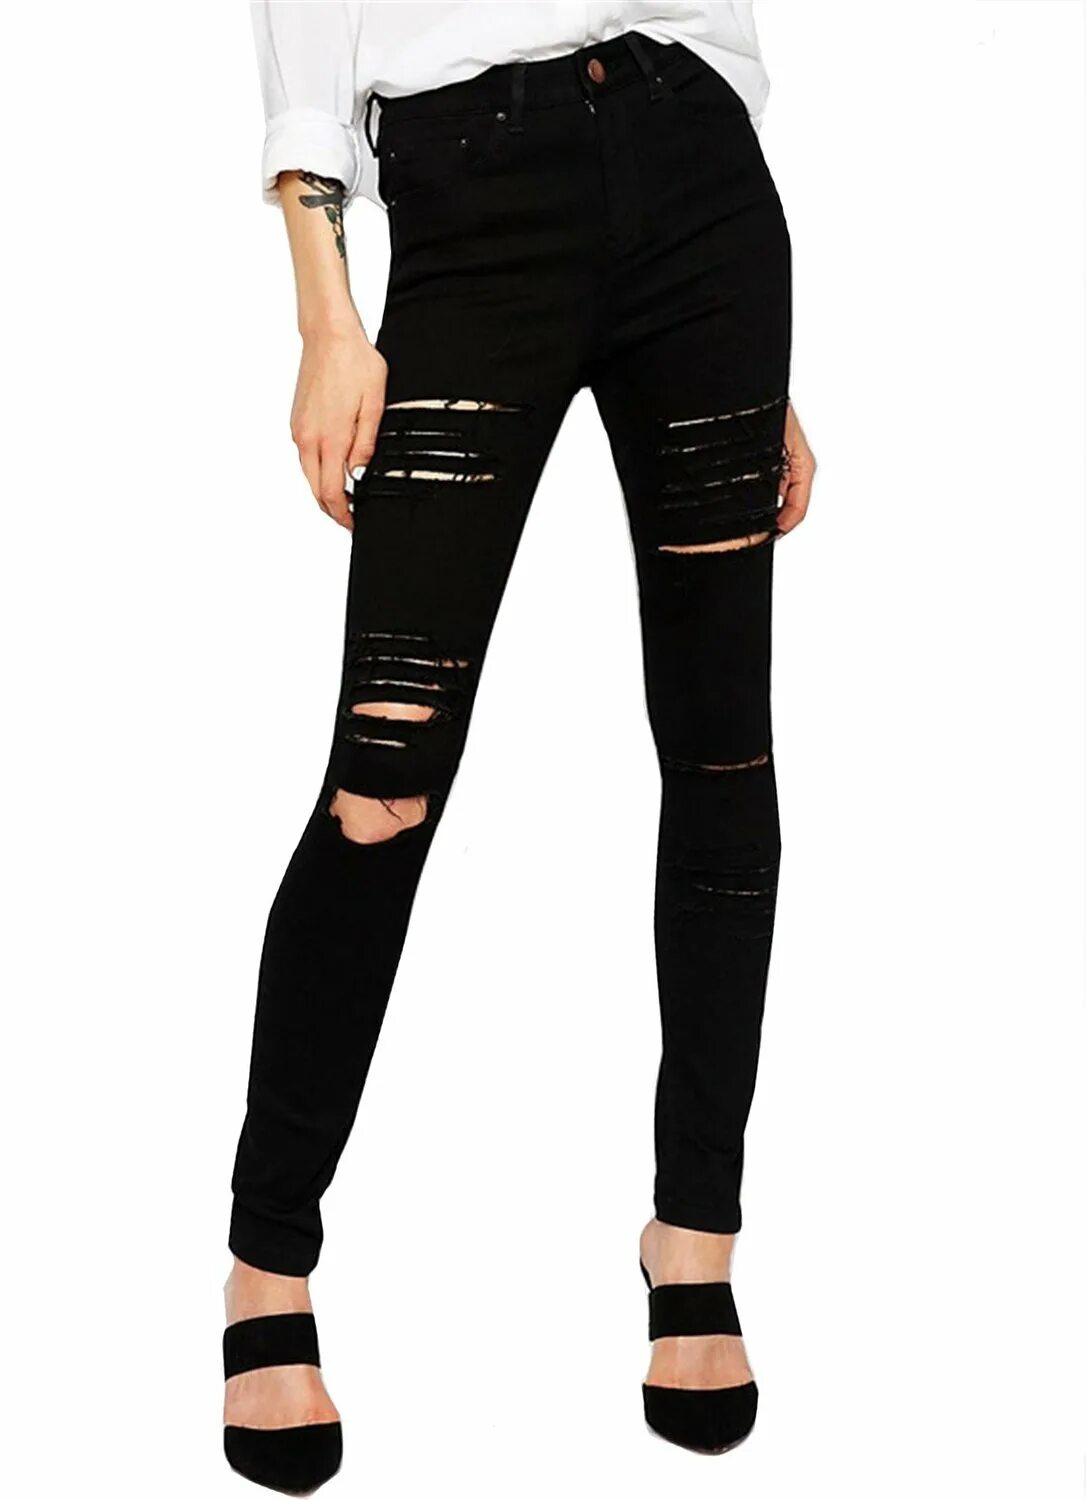 Девочка в черных штанах. Черные джинсы. Черные рваные джинсы. Черные джинсы с прорезями. Чёрные джинсы женские.